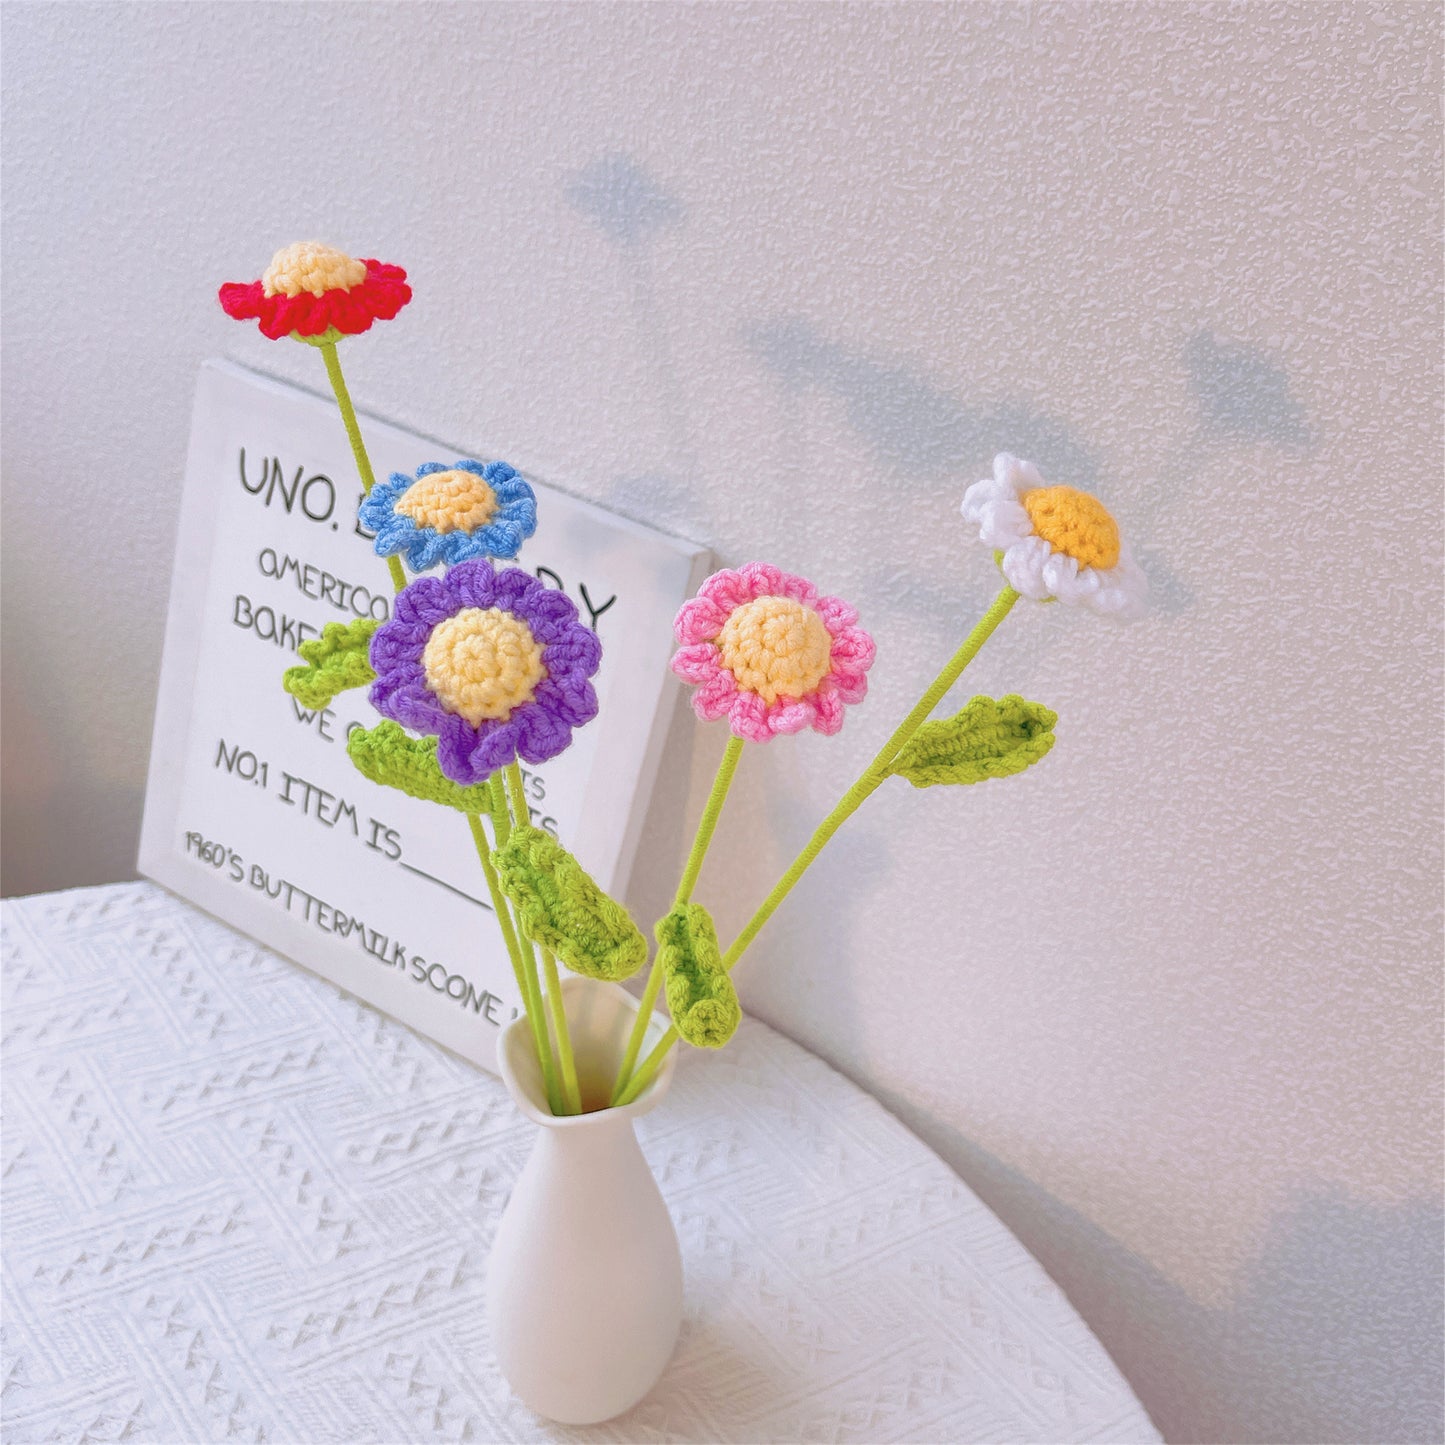 Sunny Meadow : Piquet de petites marguerites au crochet fabriqué à la main pour un décor de jardin joyeux